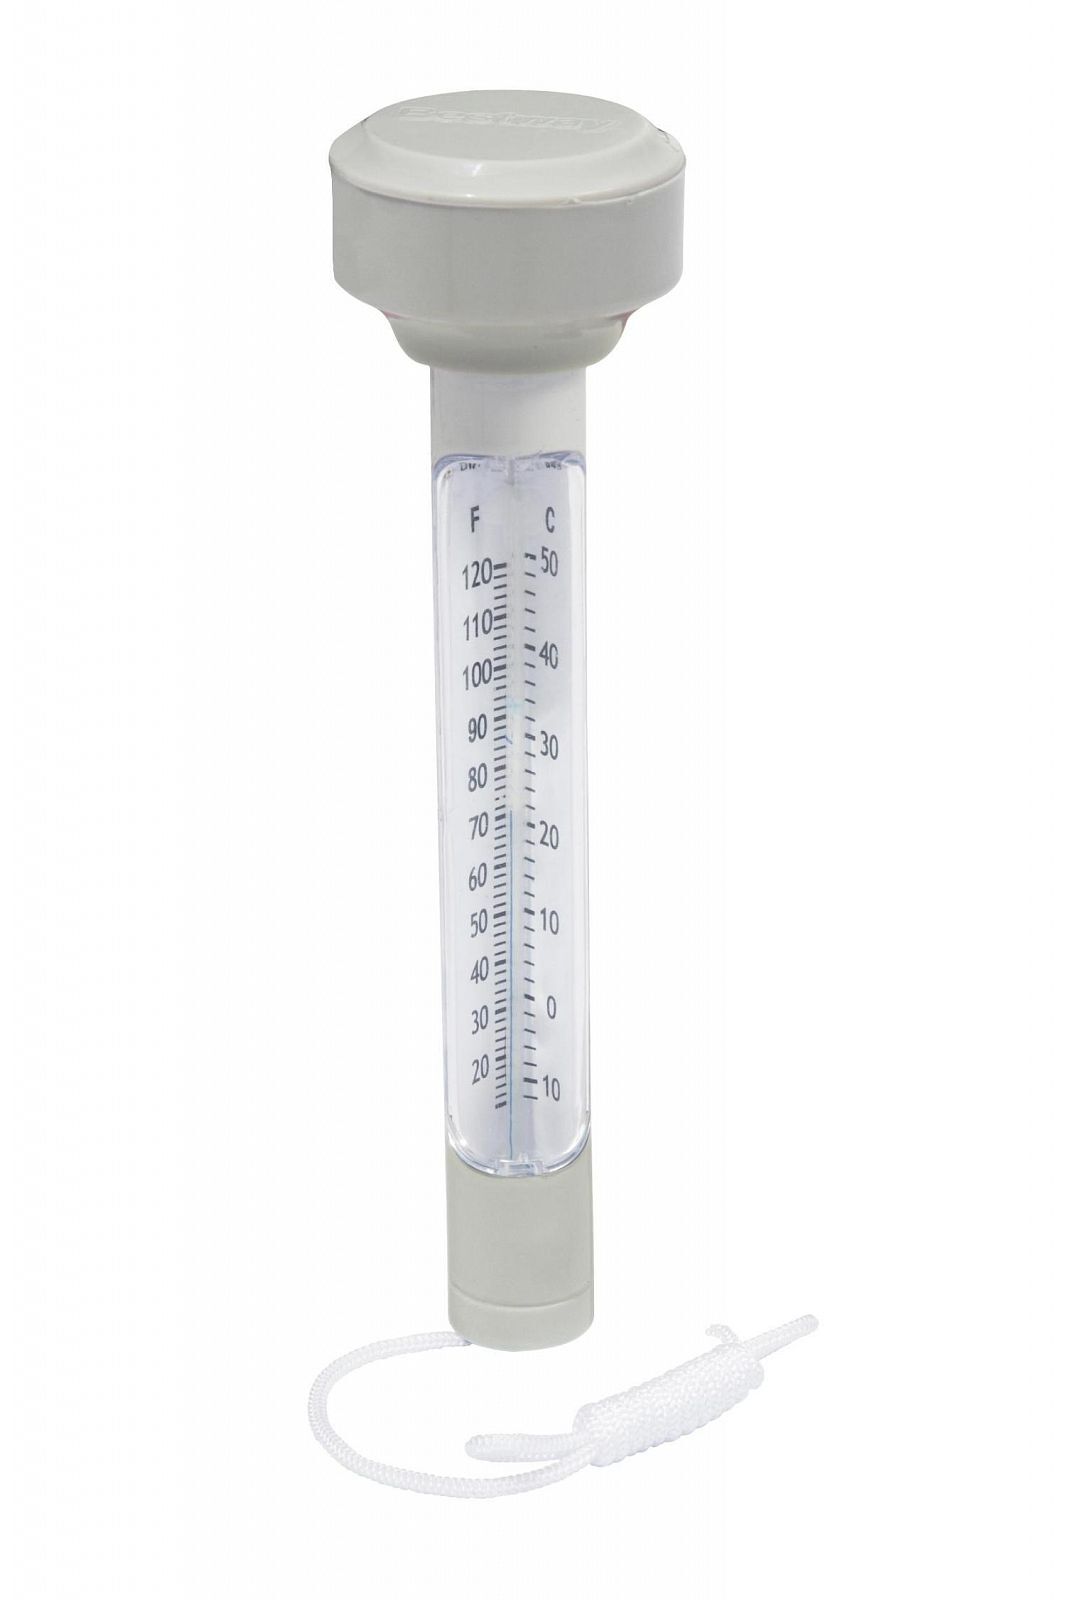 Термометр для измерения температуры воды в бассейне и ванной